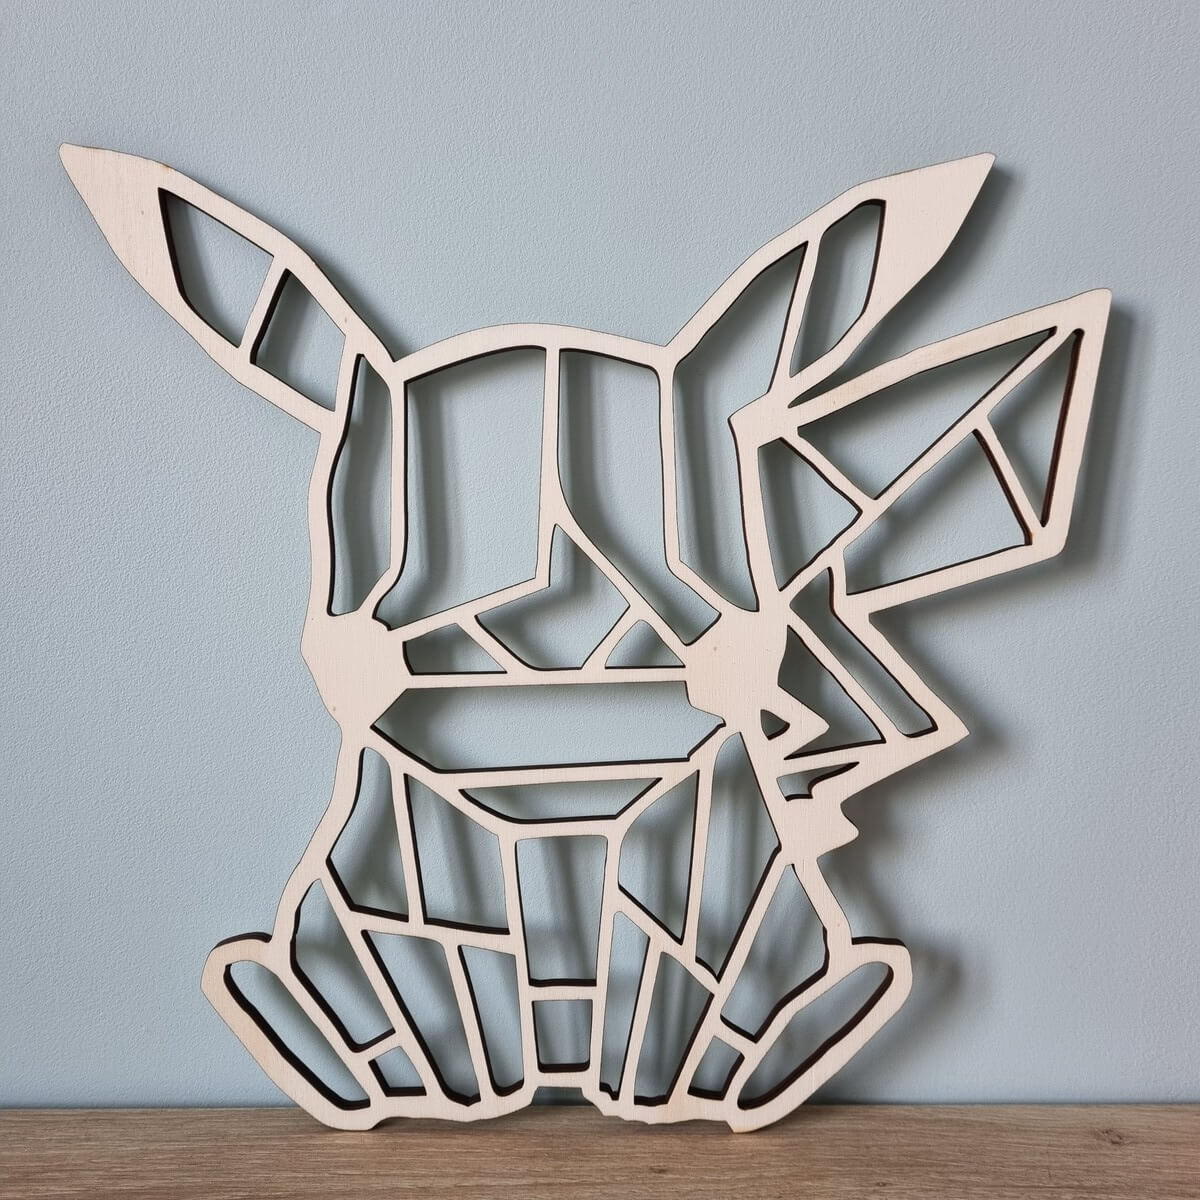 Pikachu découpe laser en bois - Origami - Décoration murale géométrique -  Haut. 30 cm - PrimoLaser